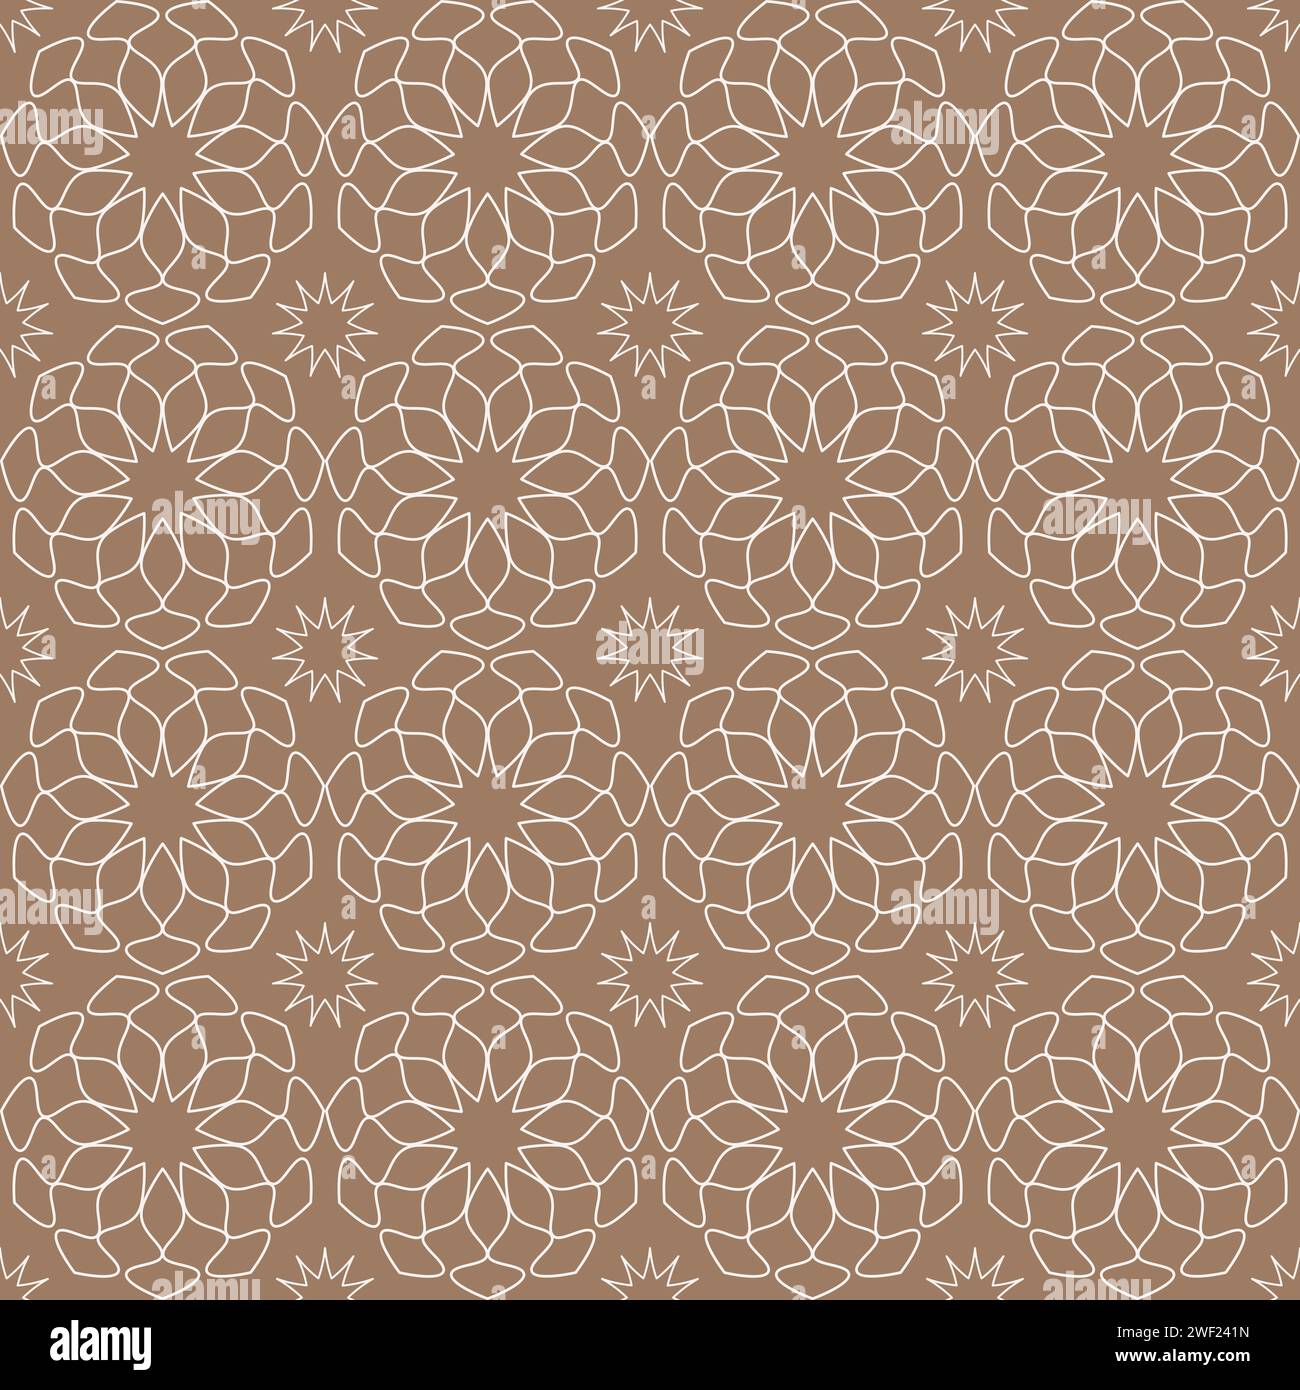 Linie Blumen nahtloser Hintergrund. Kaleidoskop-Muster Mosaische Vektorillustration isoliert Stock Vektor